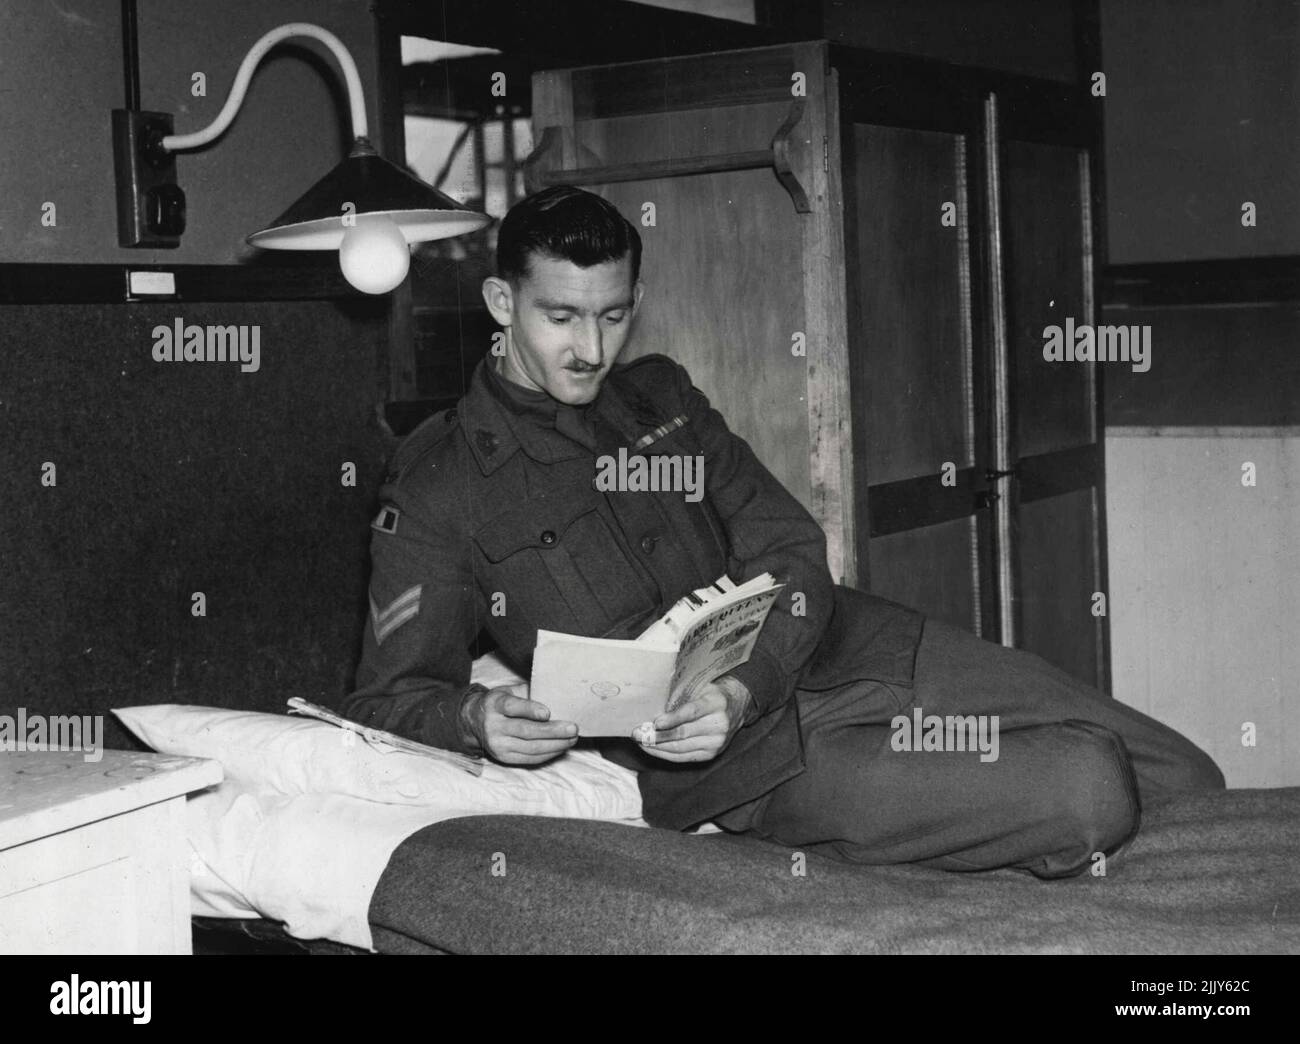 Cpl. Peter Stacey, sechs Jahre in der Armee, findet ***** Kopflampe, Bettwäsche, Kleiderschrank, eine angenehme Abwechslung. 17. Januar 1949. Stockfoto